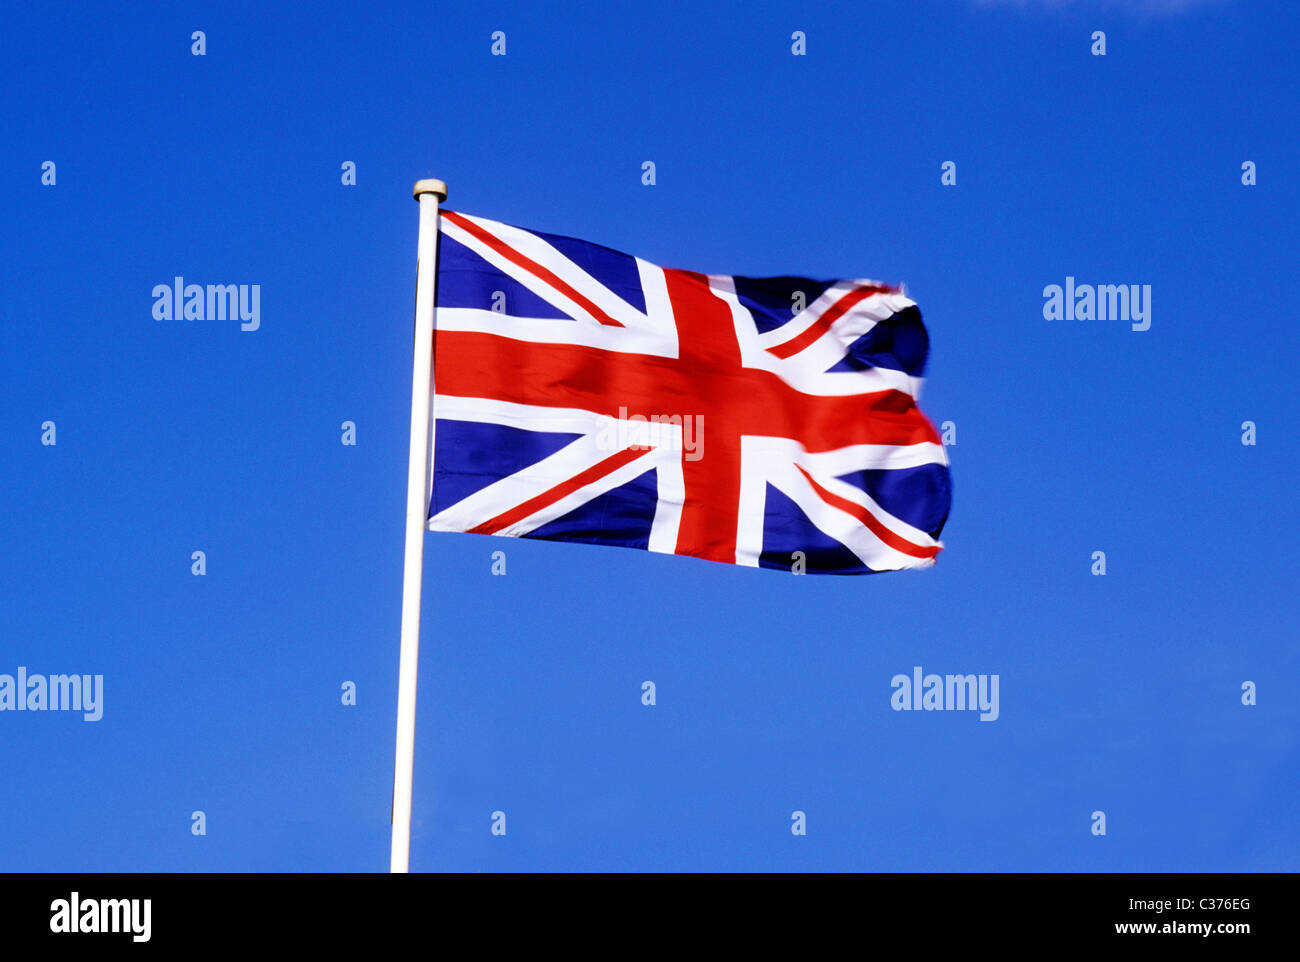 Union Jack Flag nazionale britannico di bandiere pennone pole poli UK volare con vento di Flagstaff Inghilterra Inglese Regno Unito rosso bianco e blu Foto Stock